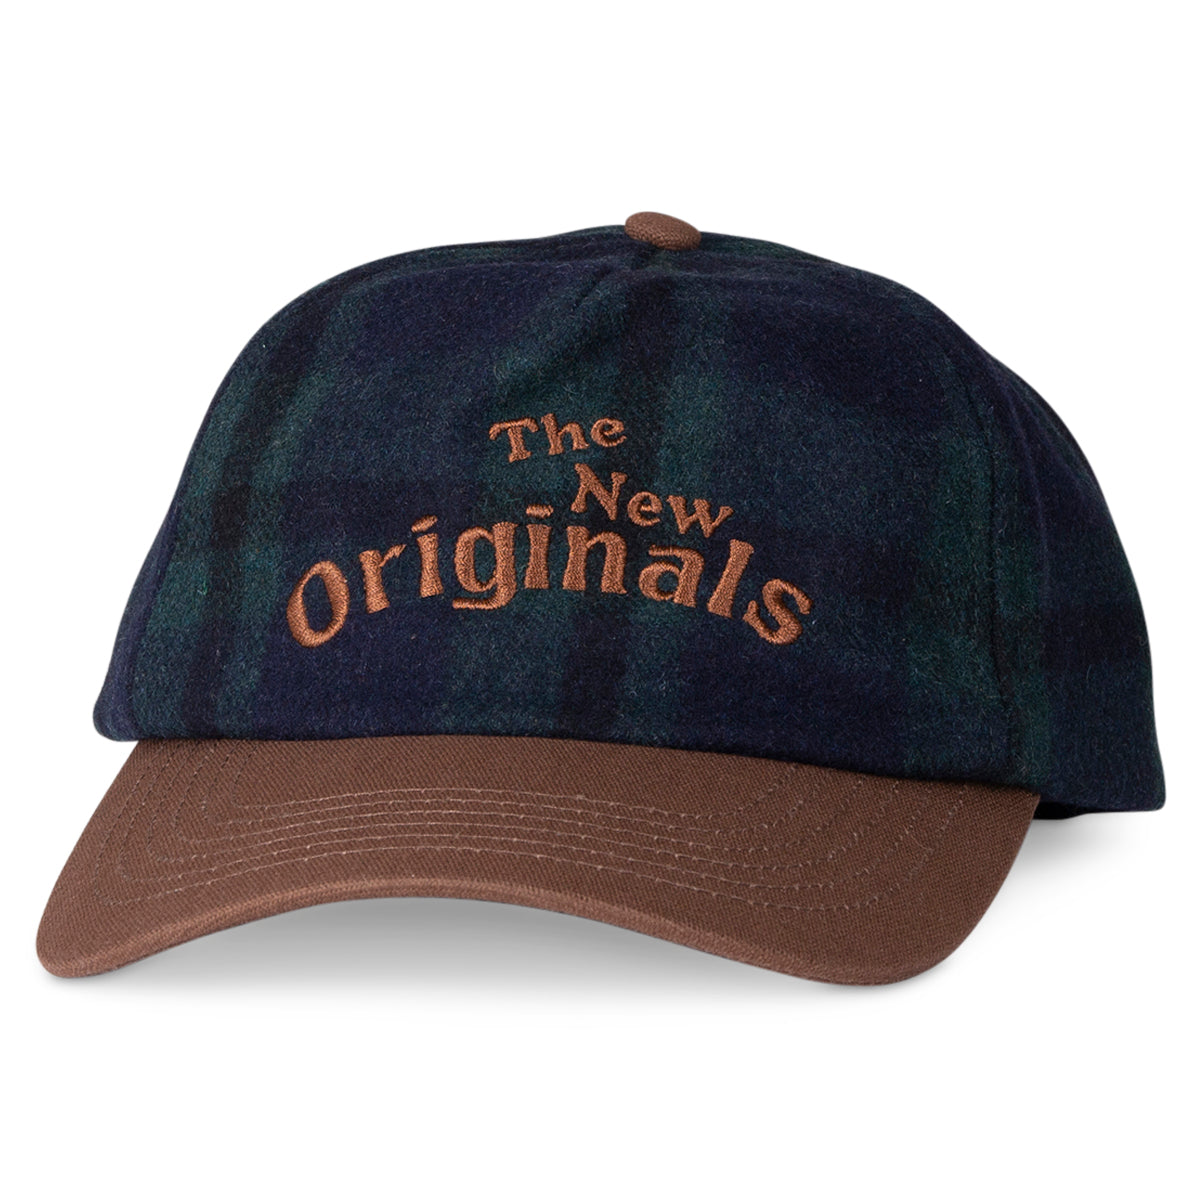 The New Originals Cap groen met bruin | Workman cap